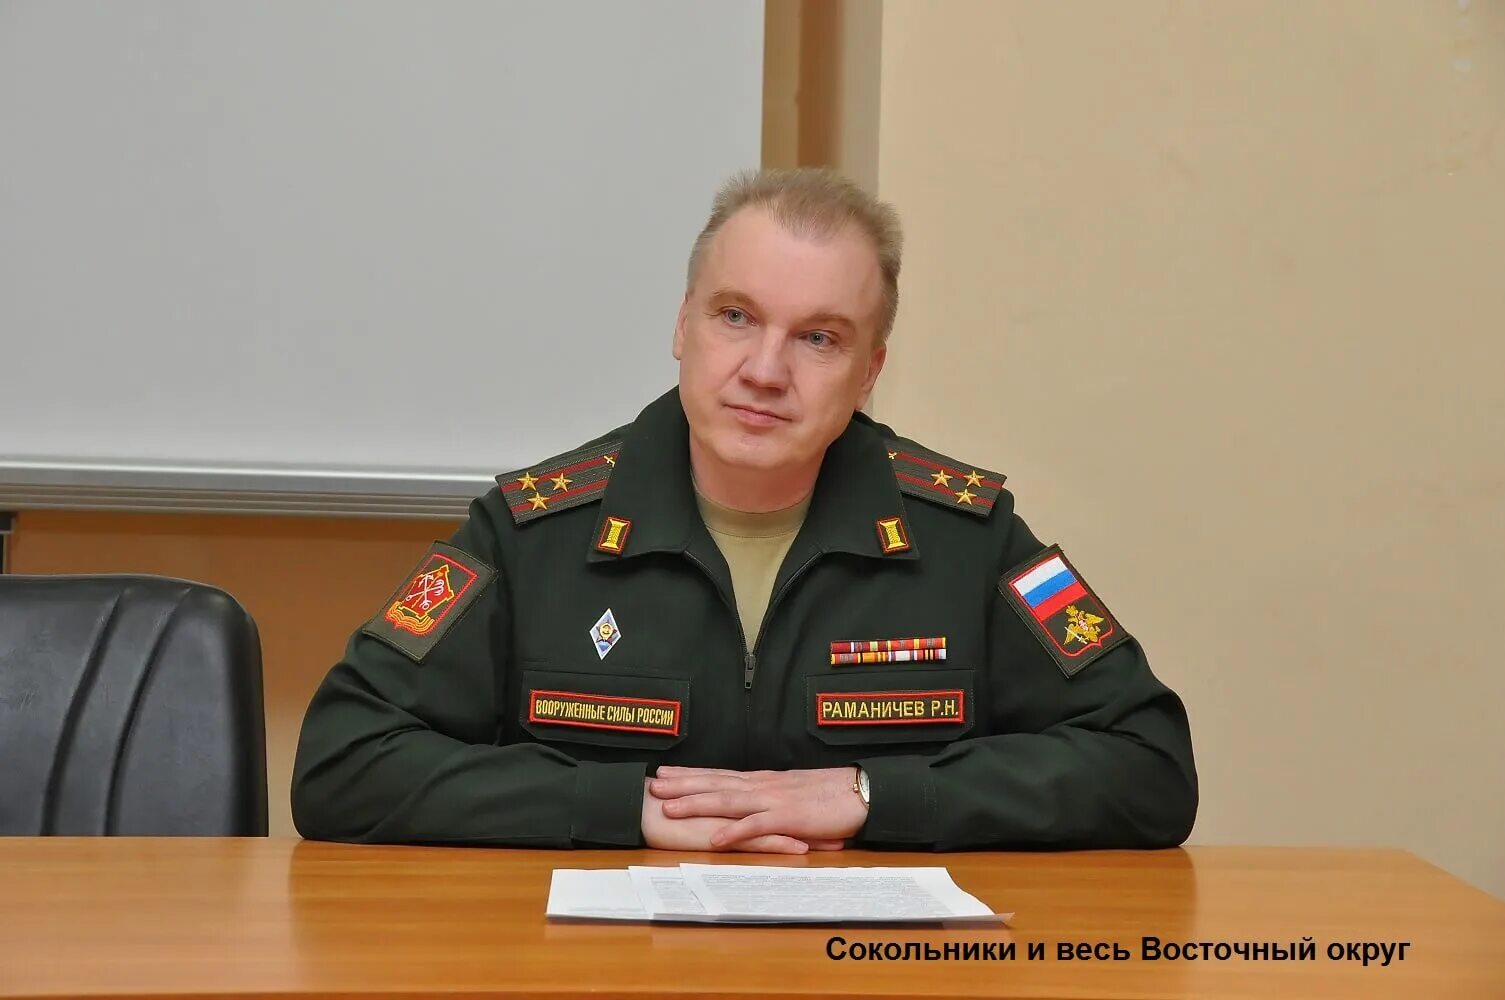 Раманичев военный комиссар.